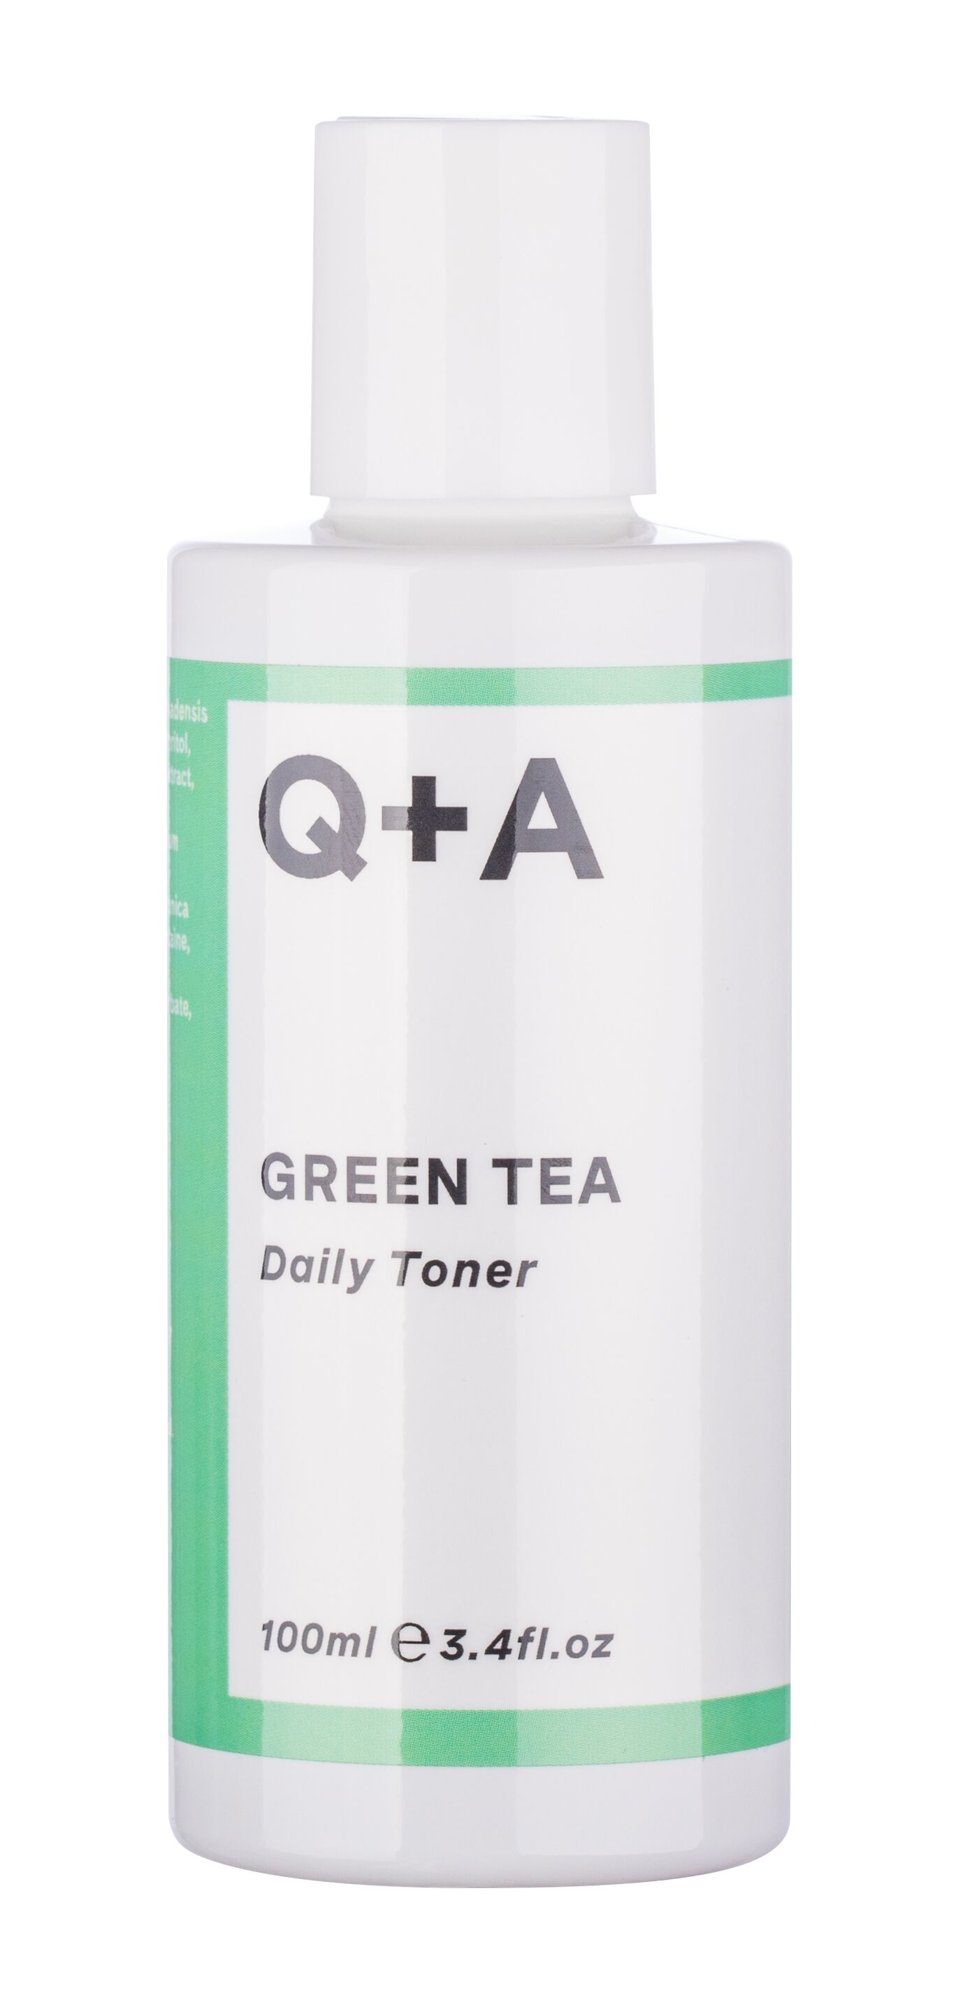 Q+A Green Tea Daily Toner valomasis vanduo veidui